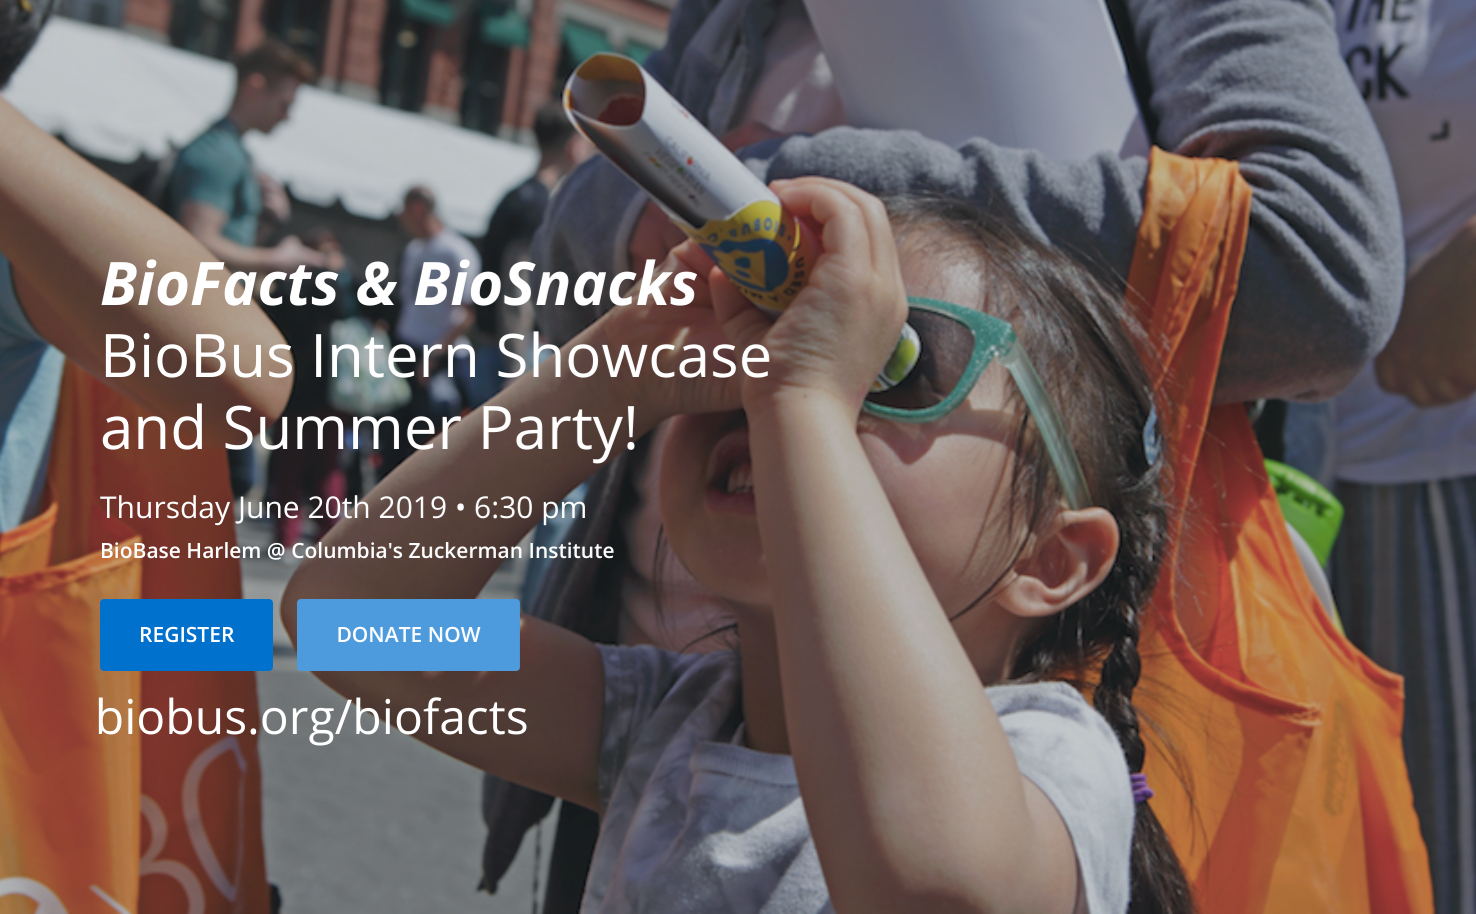 BioFacts & BioSnacks